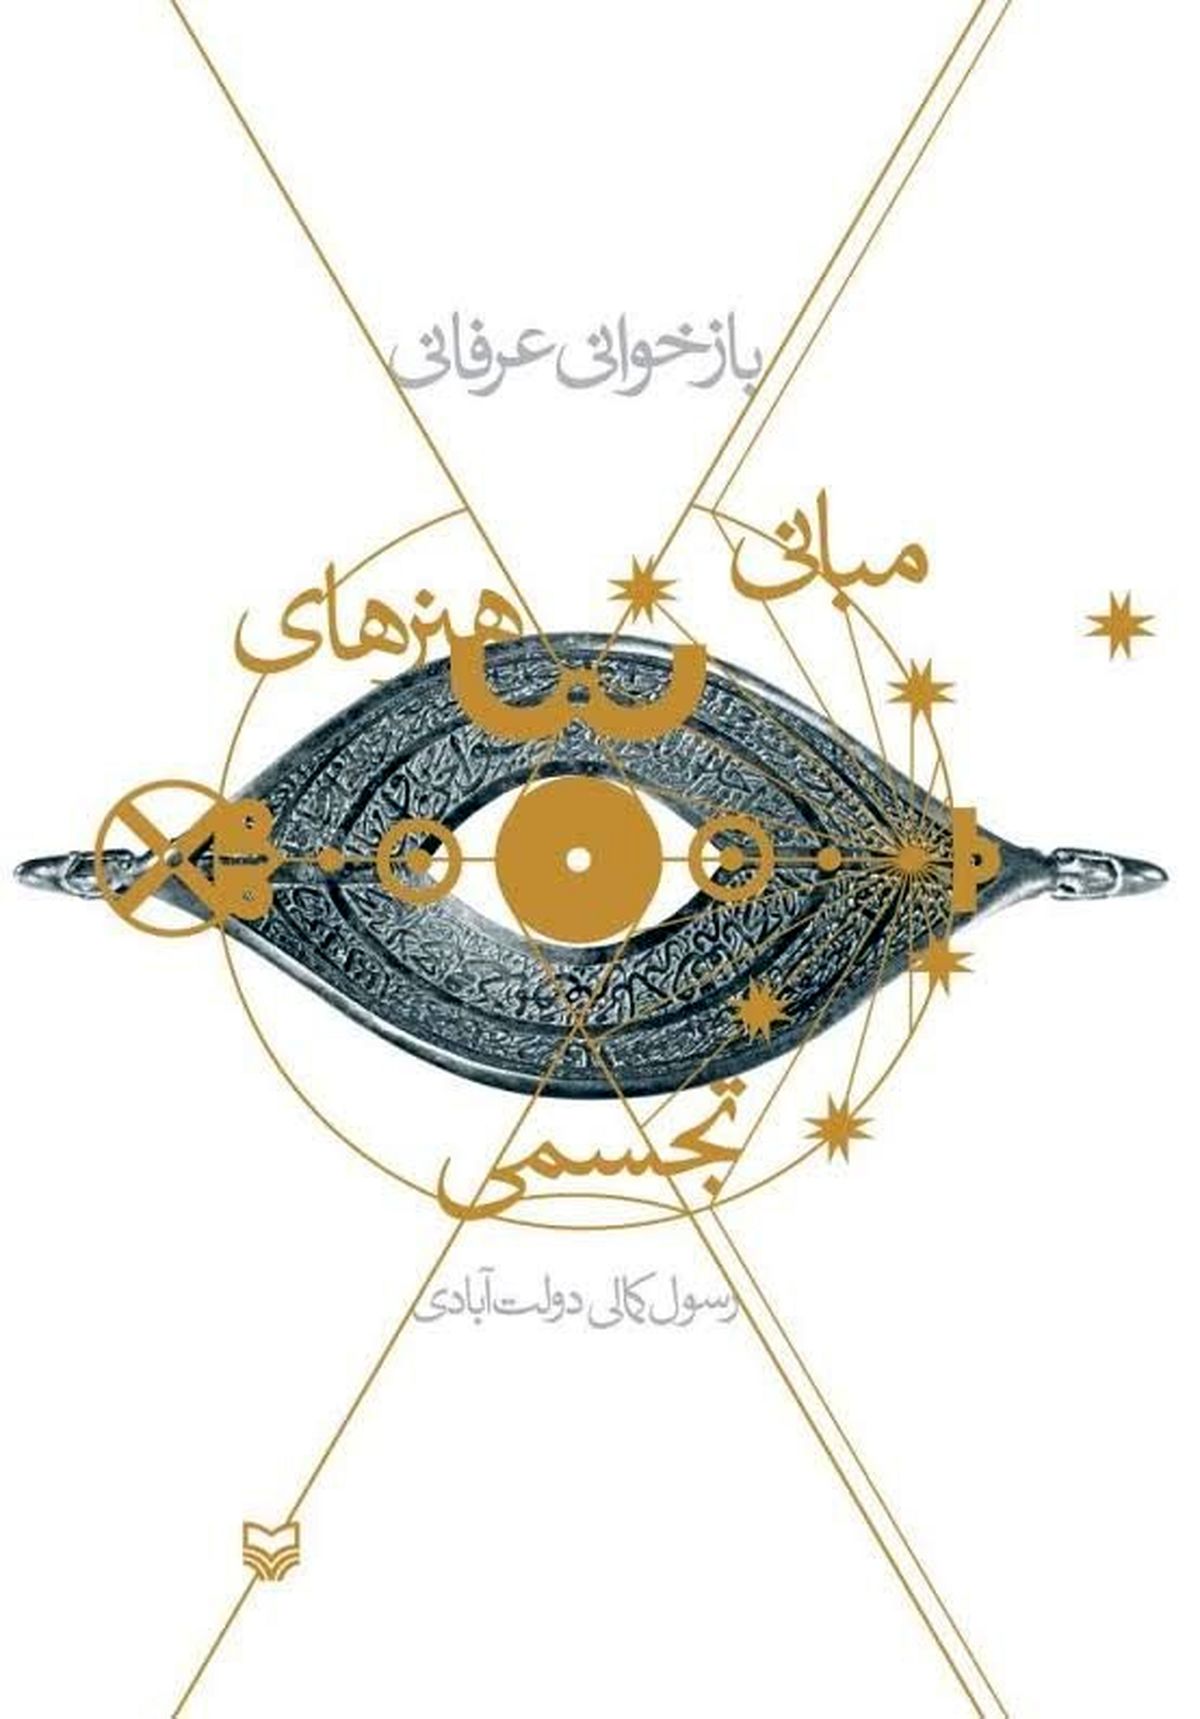 کارگاه نگارش القاب و نام مبارک حضرت علی(ع) باحضور اساتید برجسته گرافیک